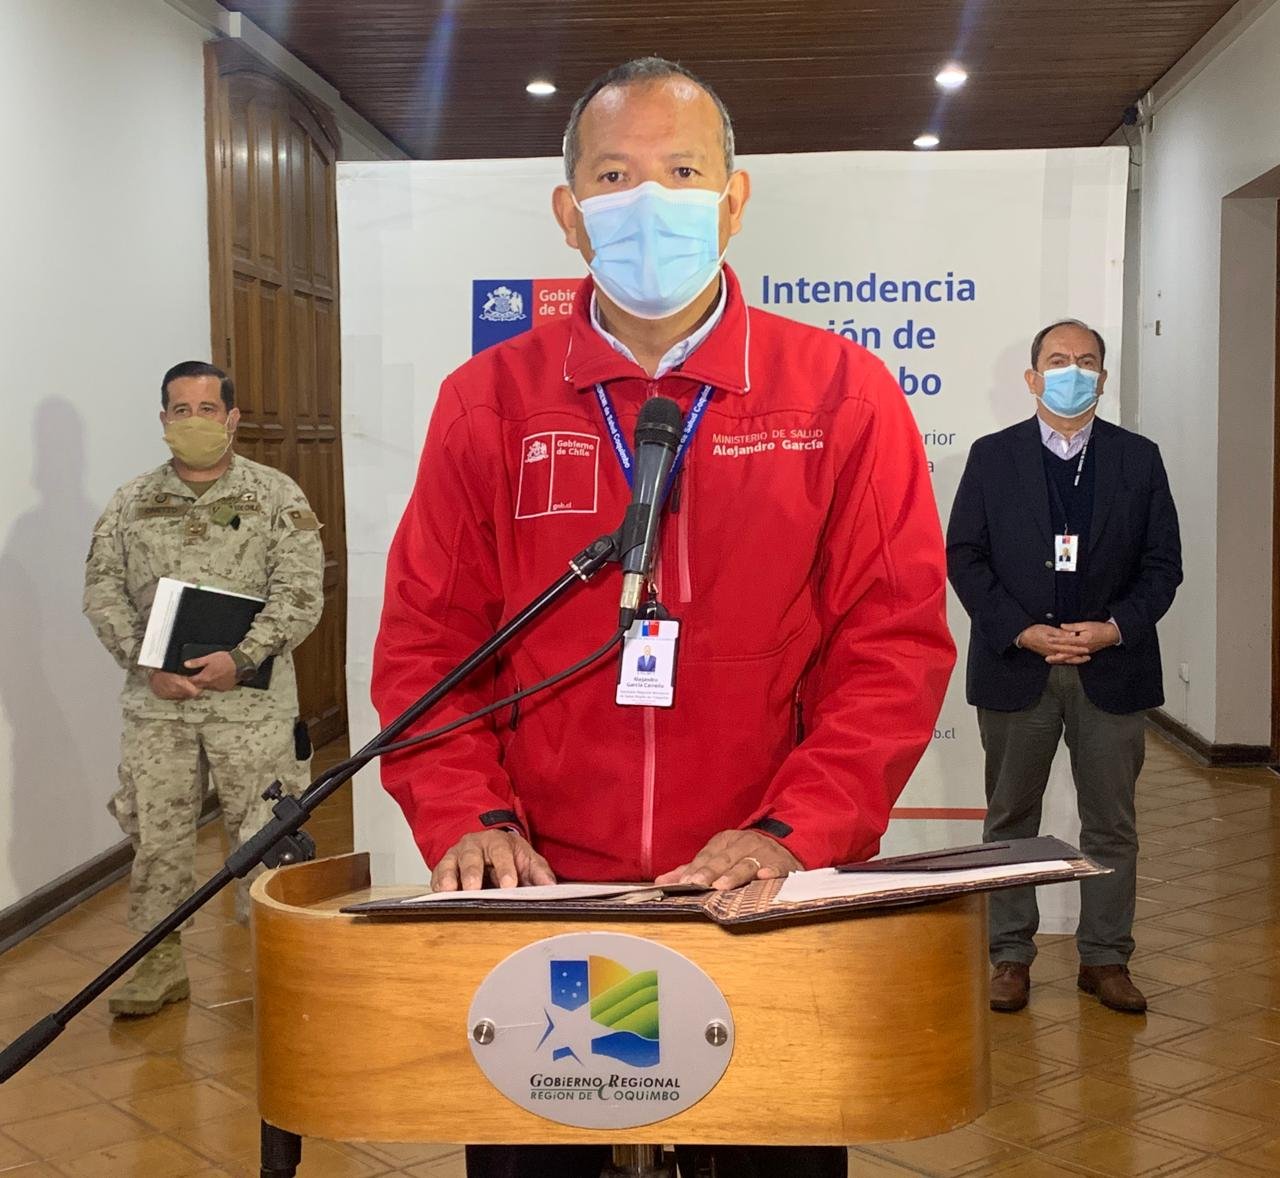 108 casos nuevos suman un total de 6.742 contagiados en la región de Coquimbo